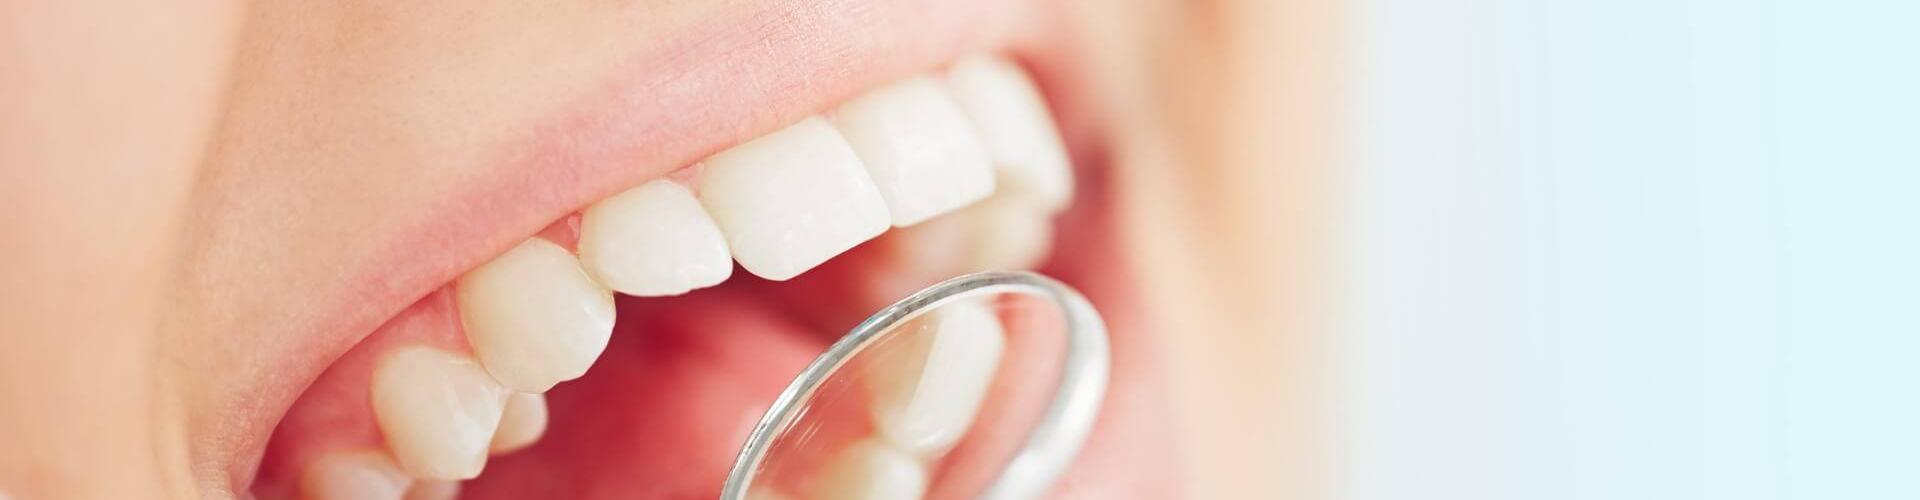 Odontoiatria mininvasiva